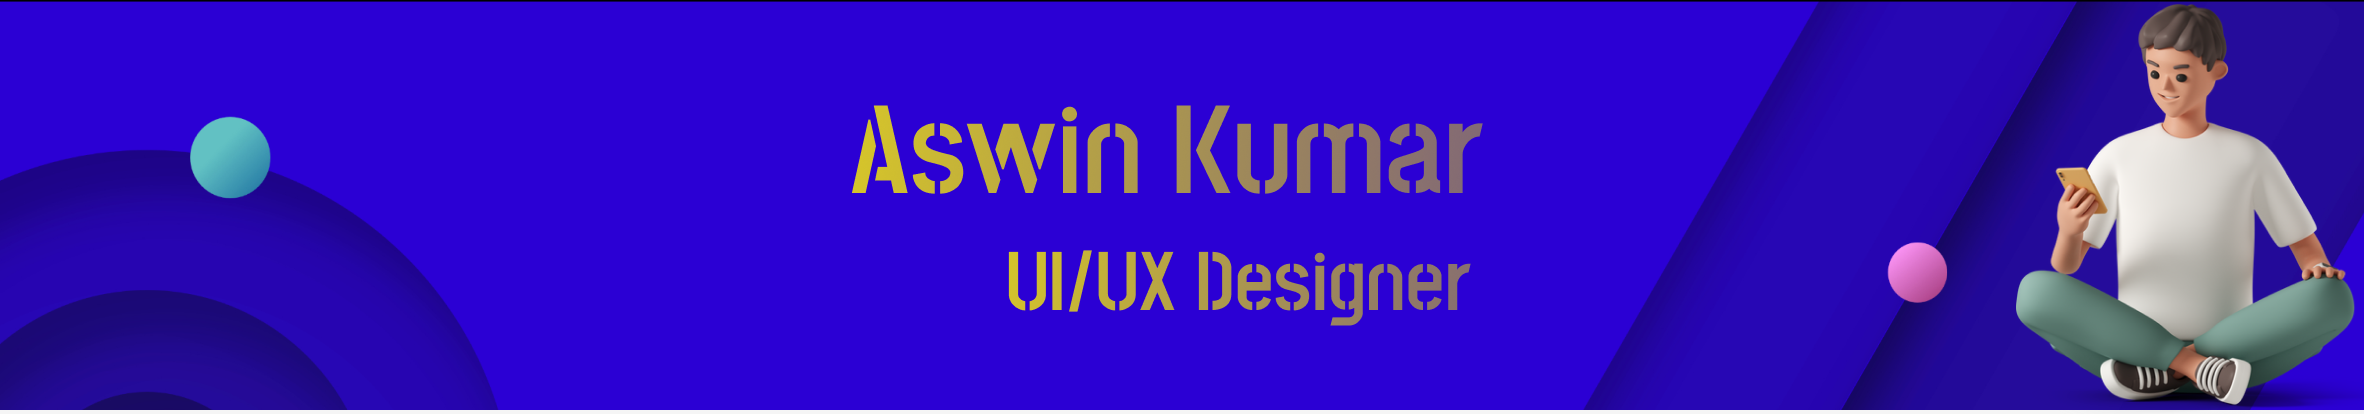 Banner de perfil de Aswin kumar